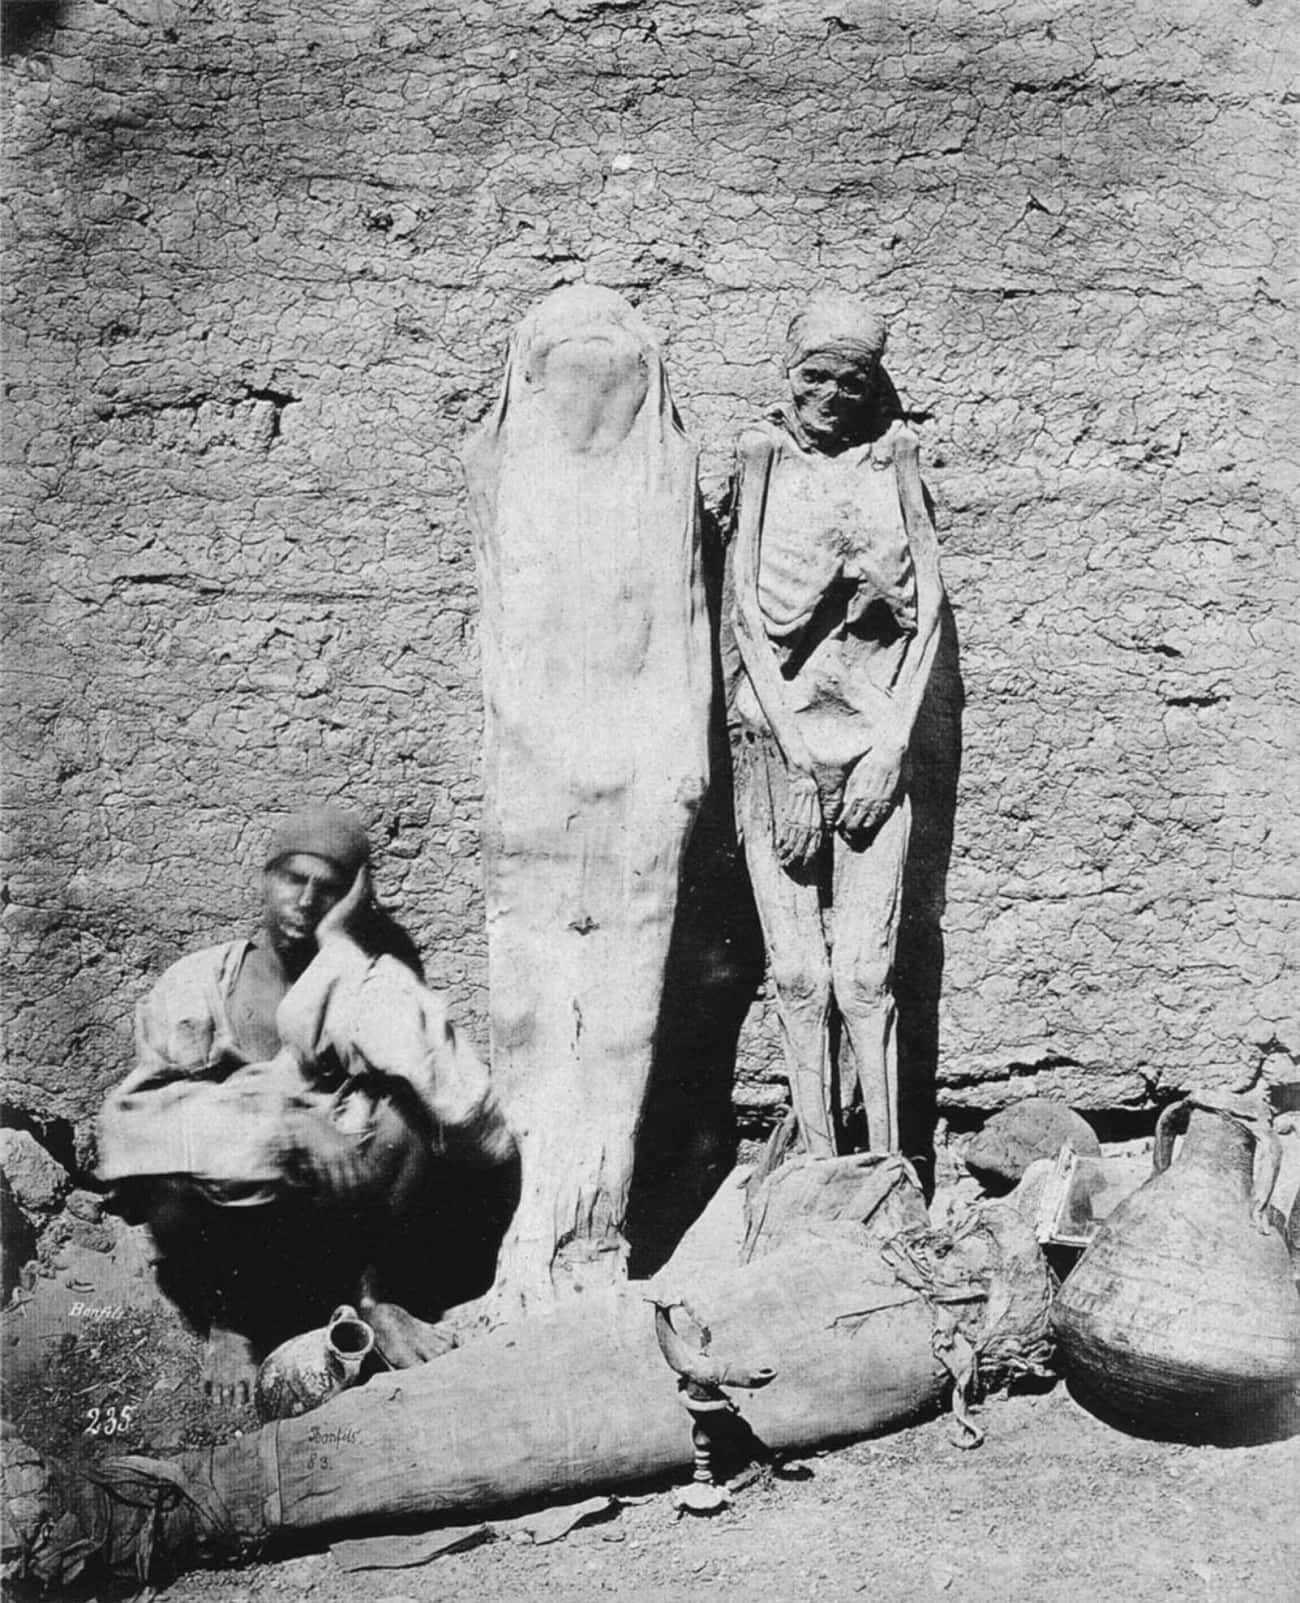 1865 - An Egyptian Street Vendor Sells Mummies